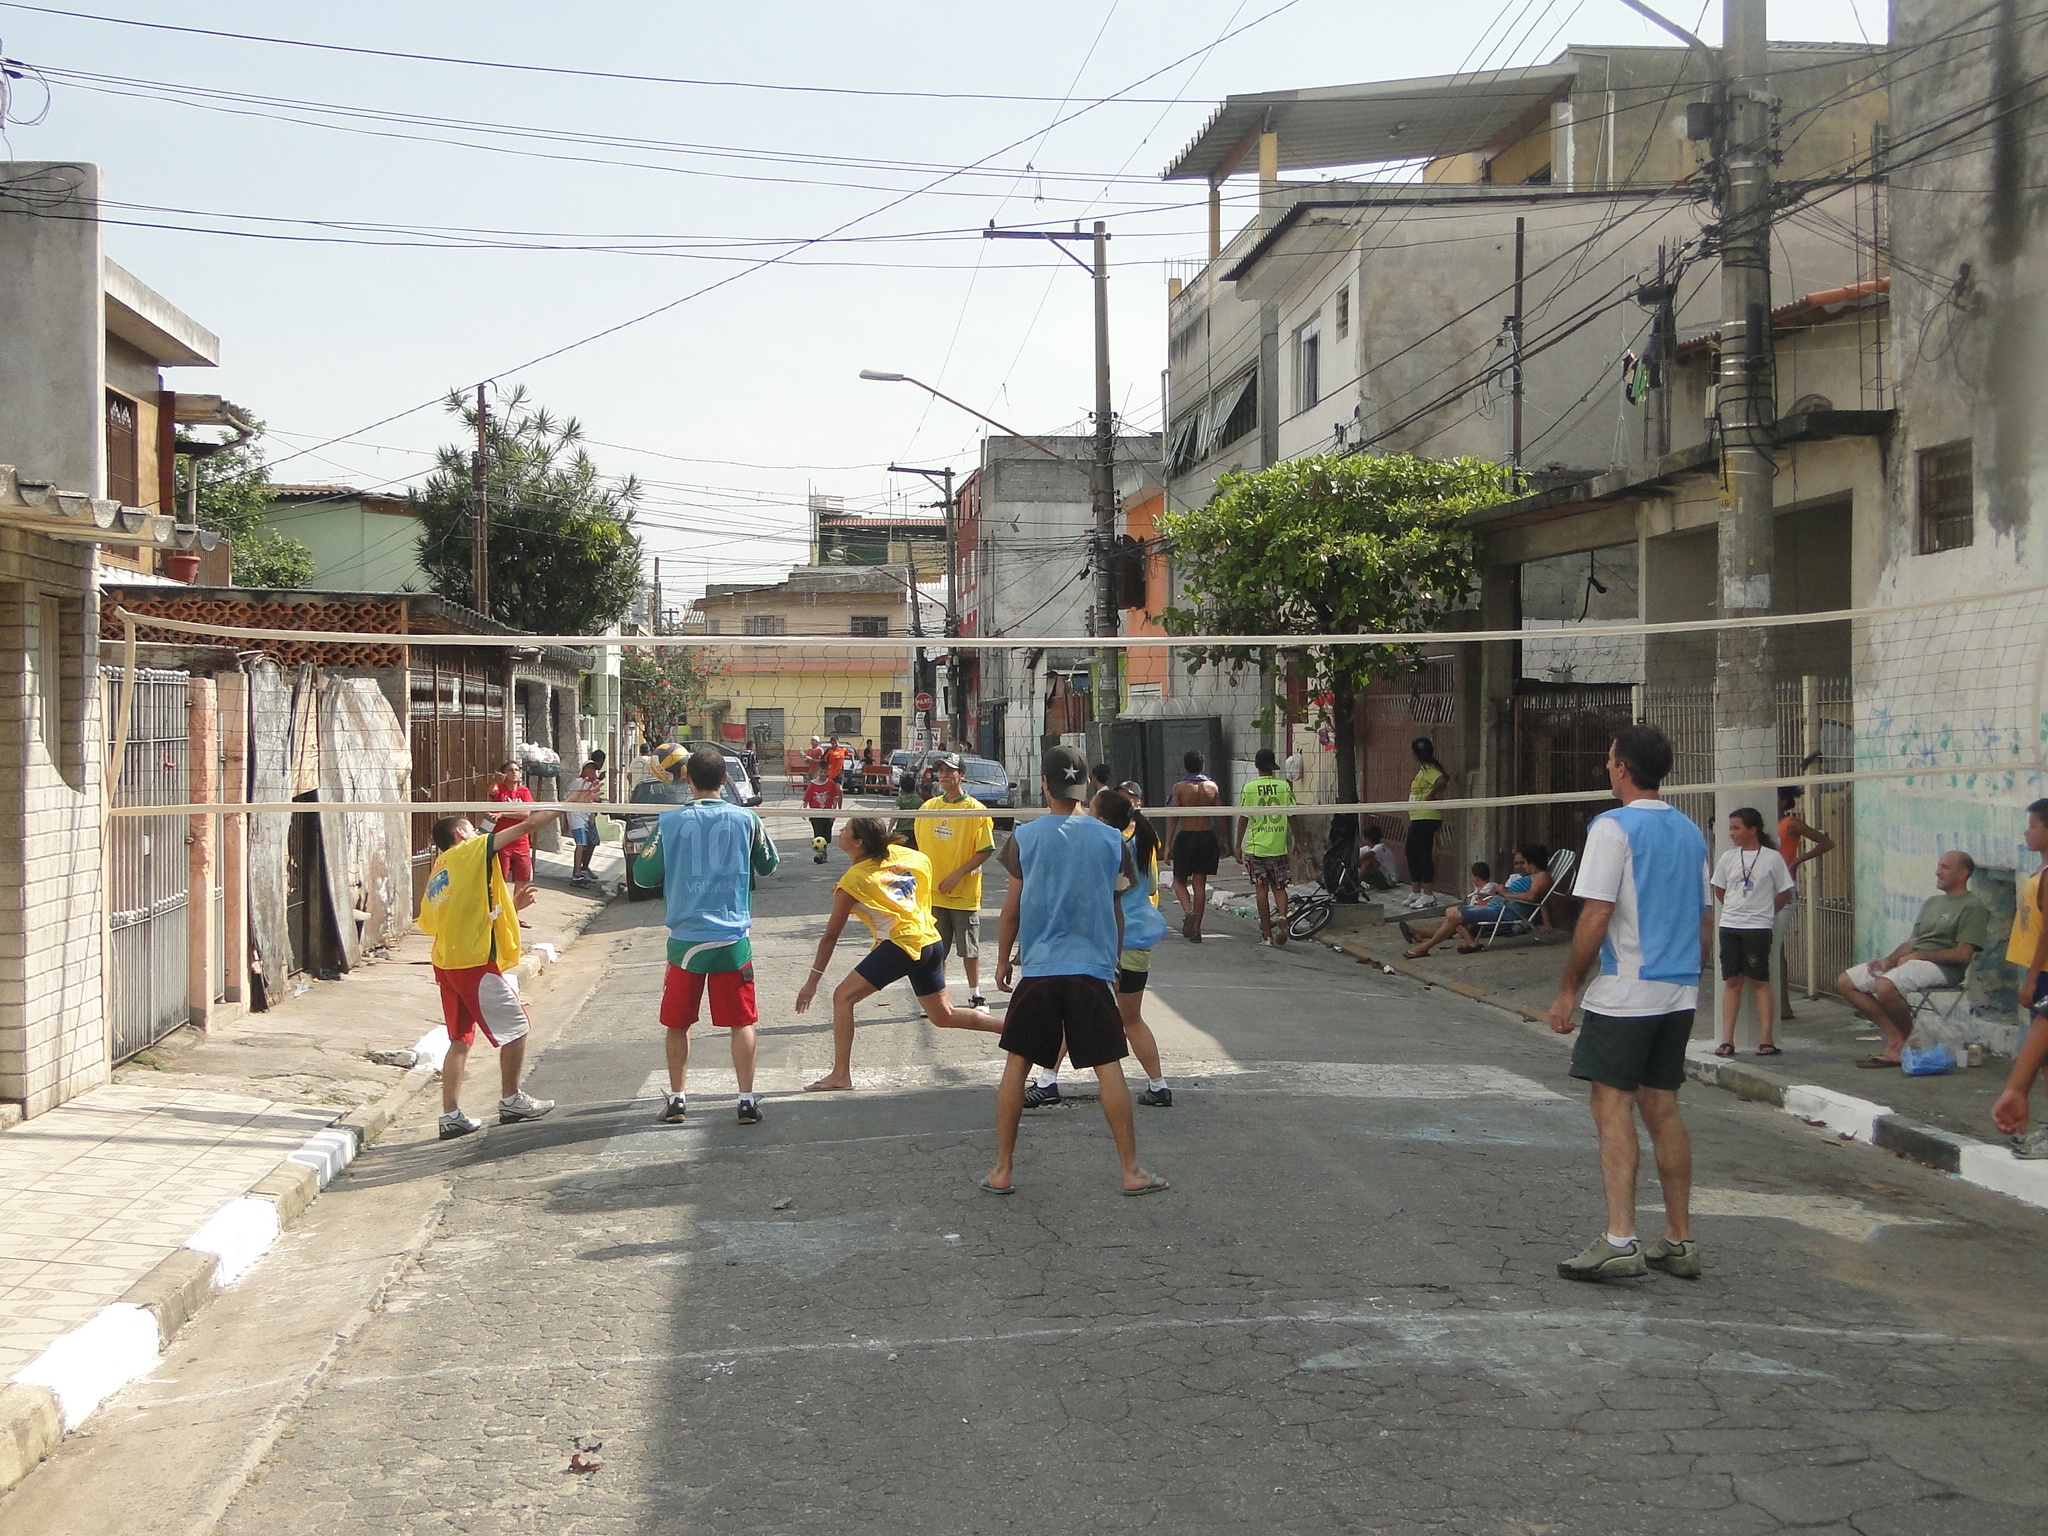 Ano passado a Virada Esportiva agitou a Rua de Brincar Santa Rosa do Viterbo, que recebeu diversas atividades esportivas e de lazer